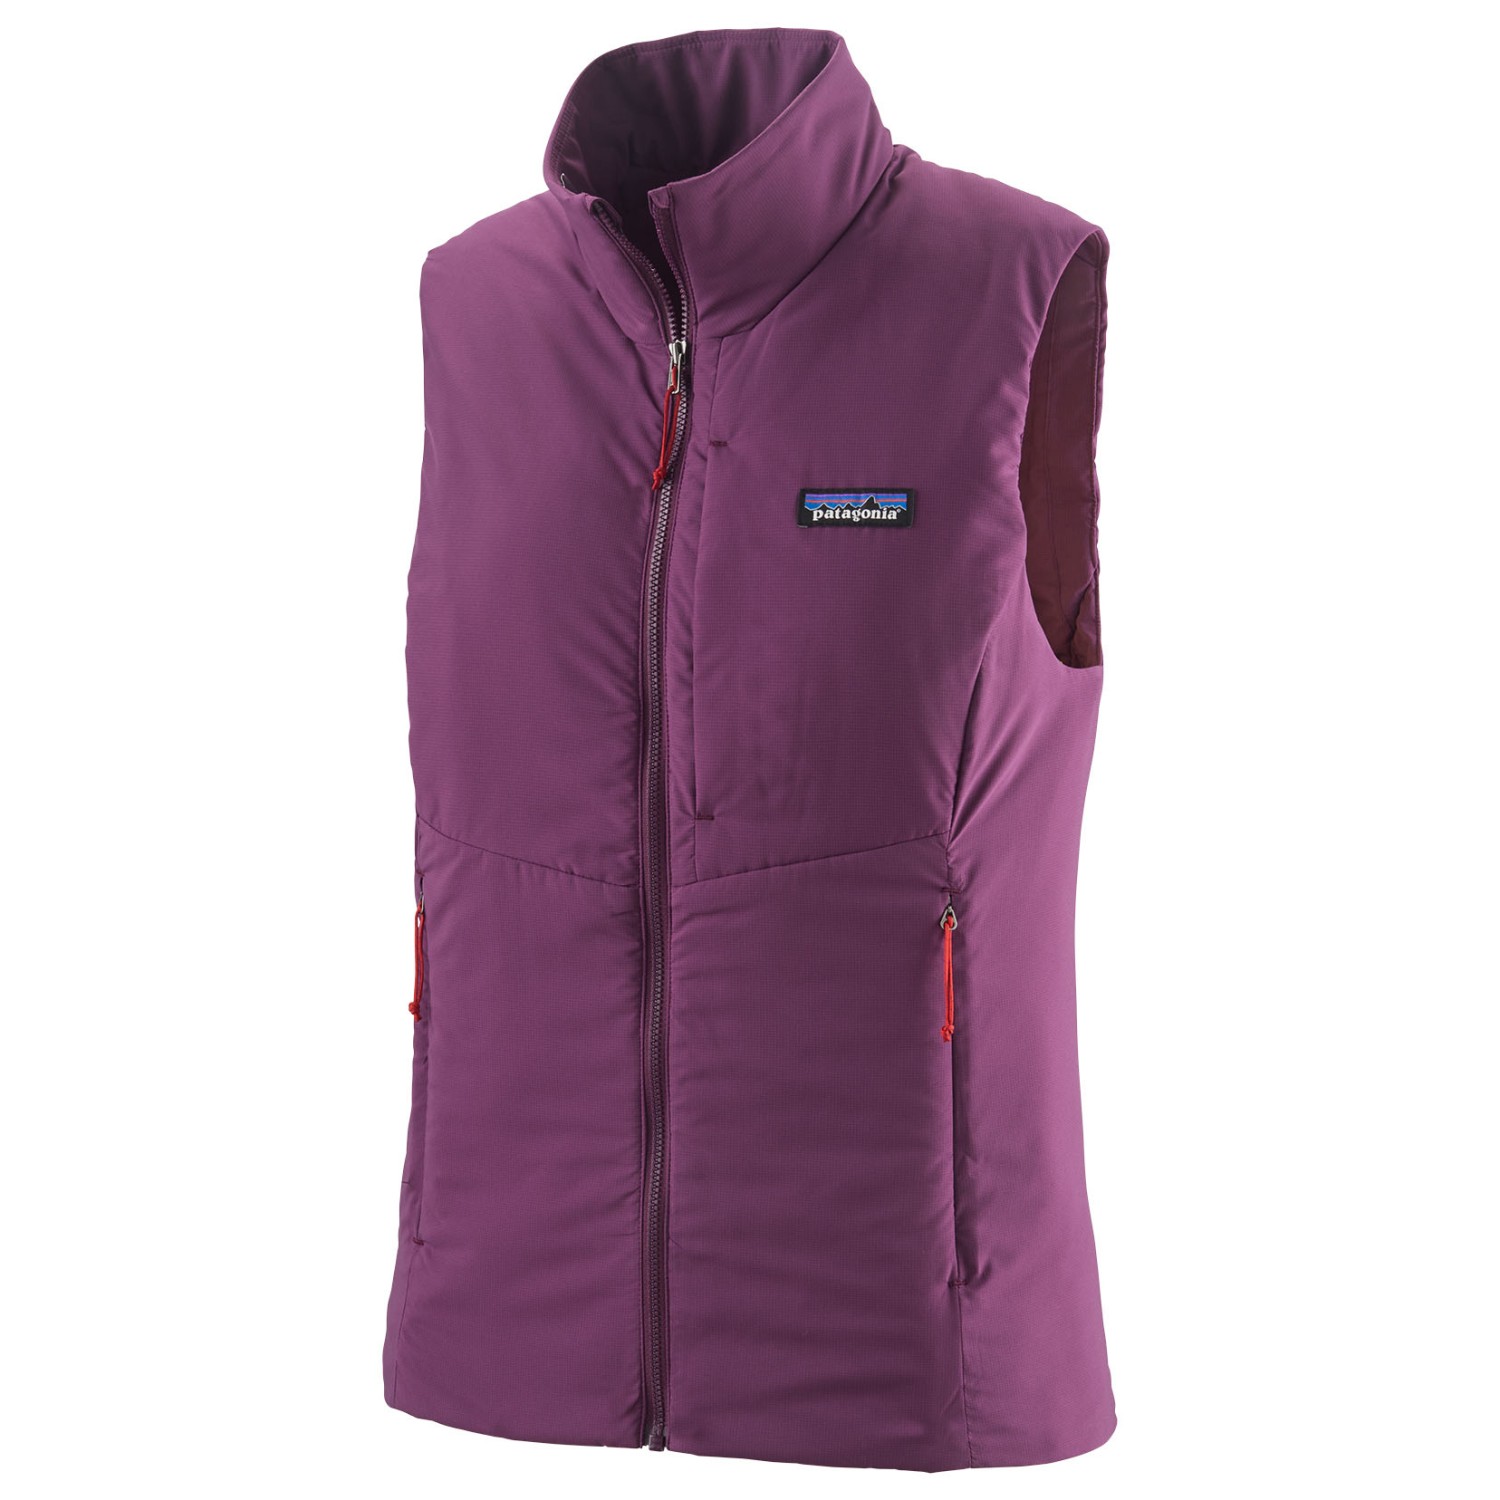 Жилет из синтетического волокна Patagonia Women's Nano Air Light Vest, цвет Night Plum